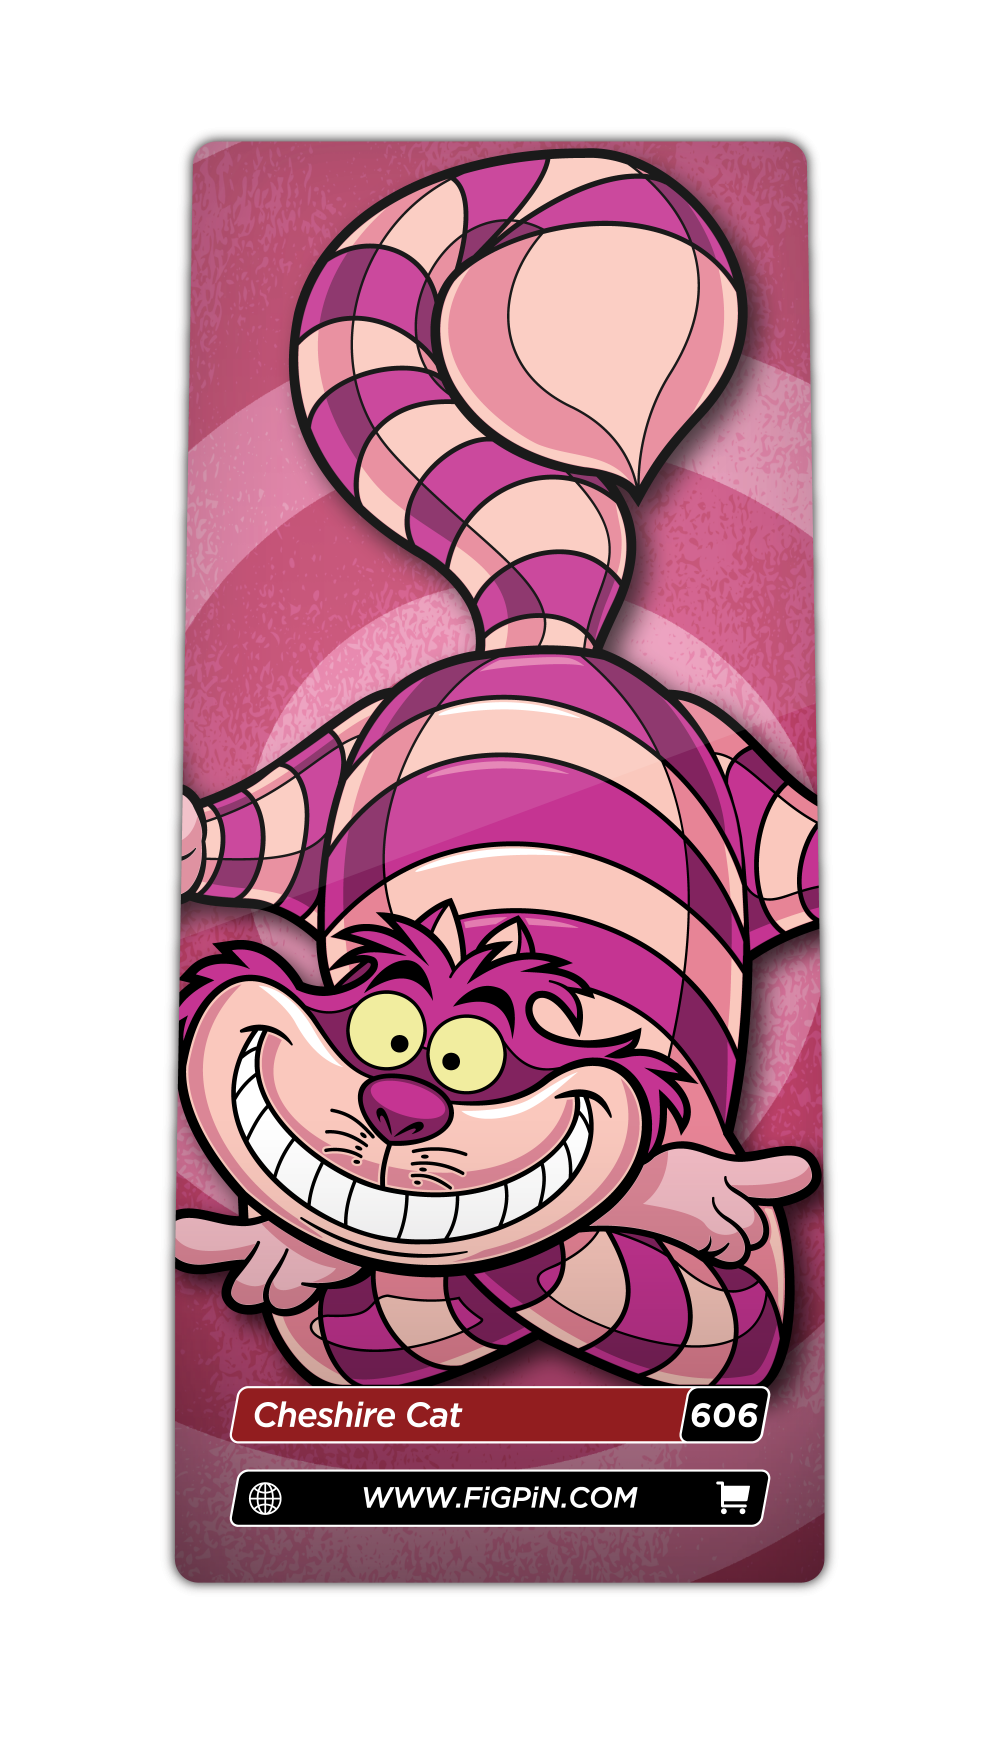 Cheshire Cat (606)